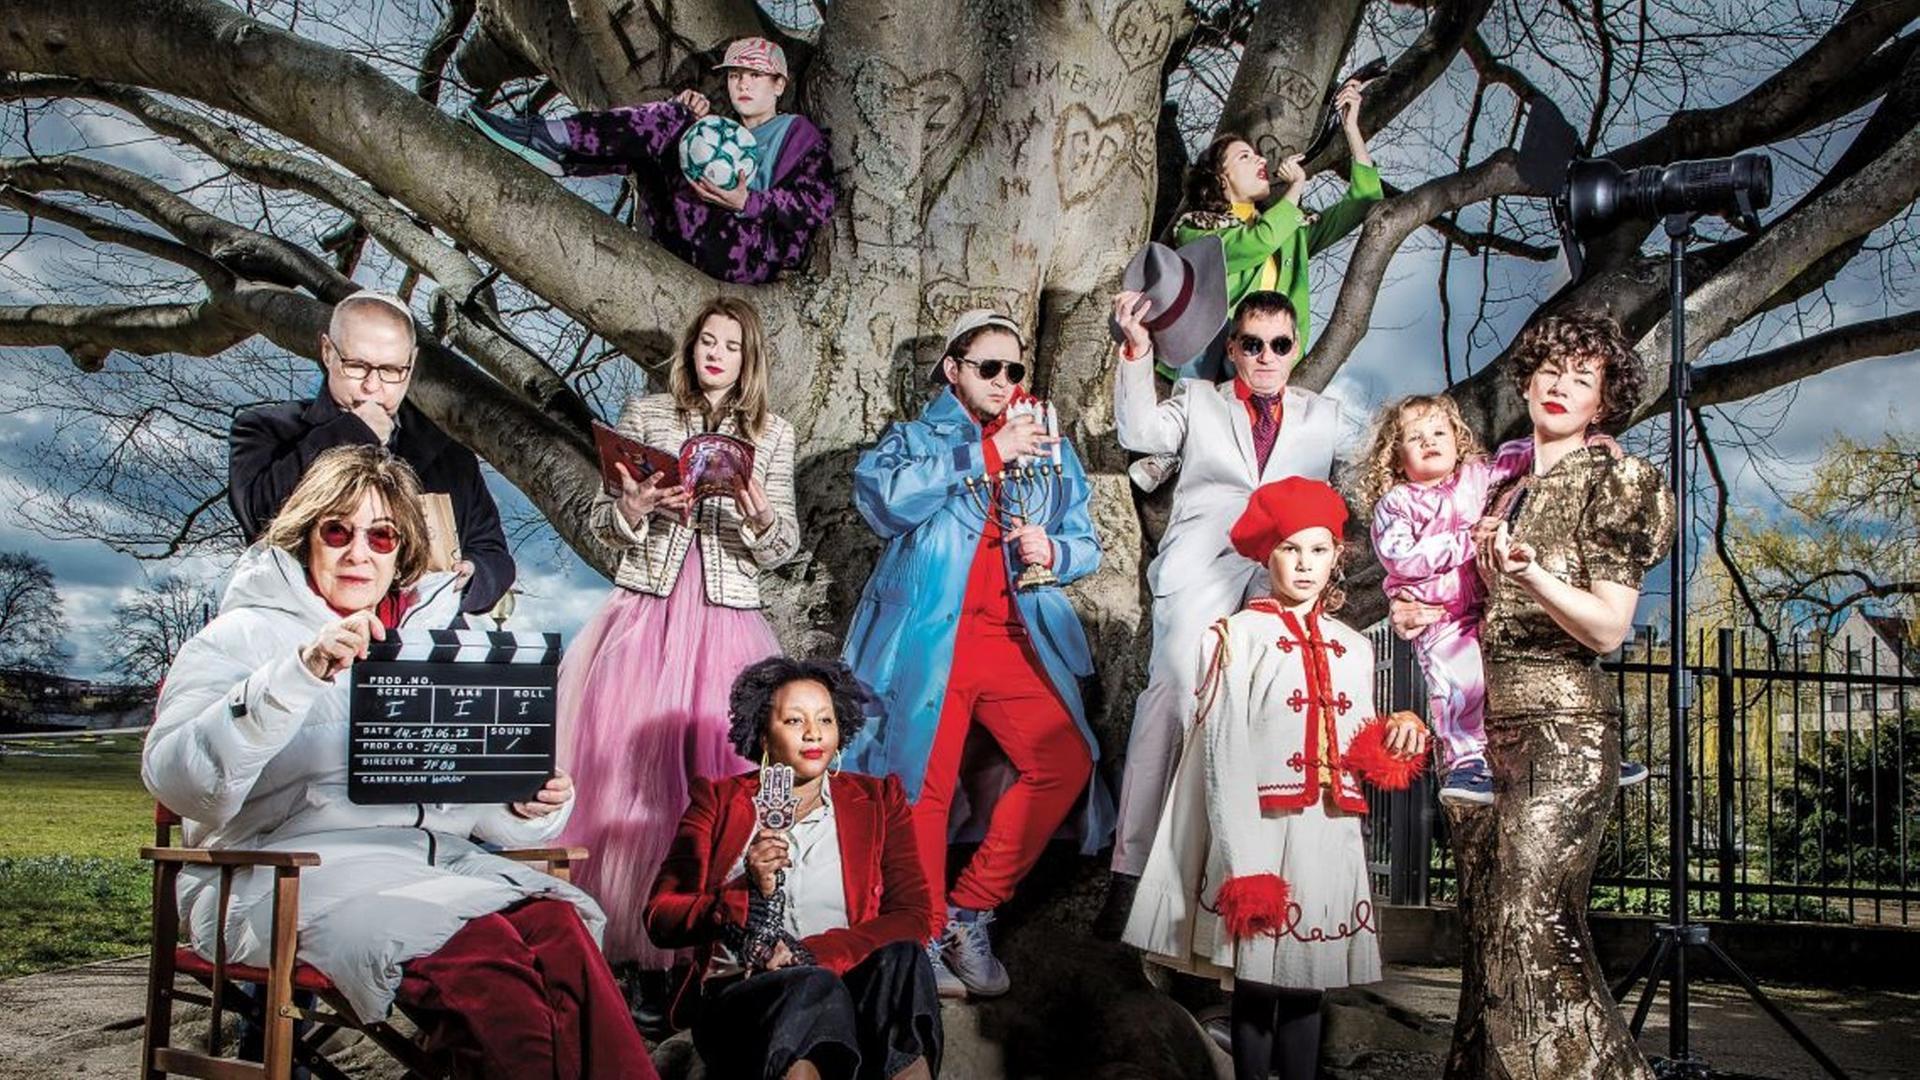 Das Hauptmotiv des 28. Jüdischen Filmfestival Berlin-Brandenburg 2022 zeigt auf dem Festivalplakat mehrere Menschen in bunten Kostümen zusammen unter einem alten Baum.